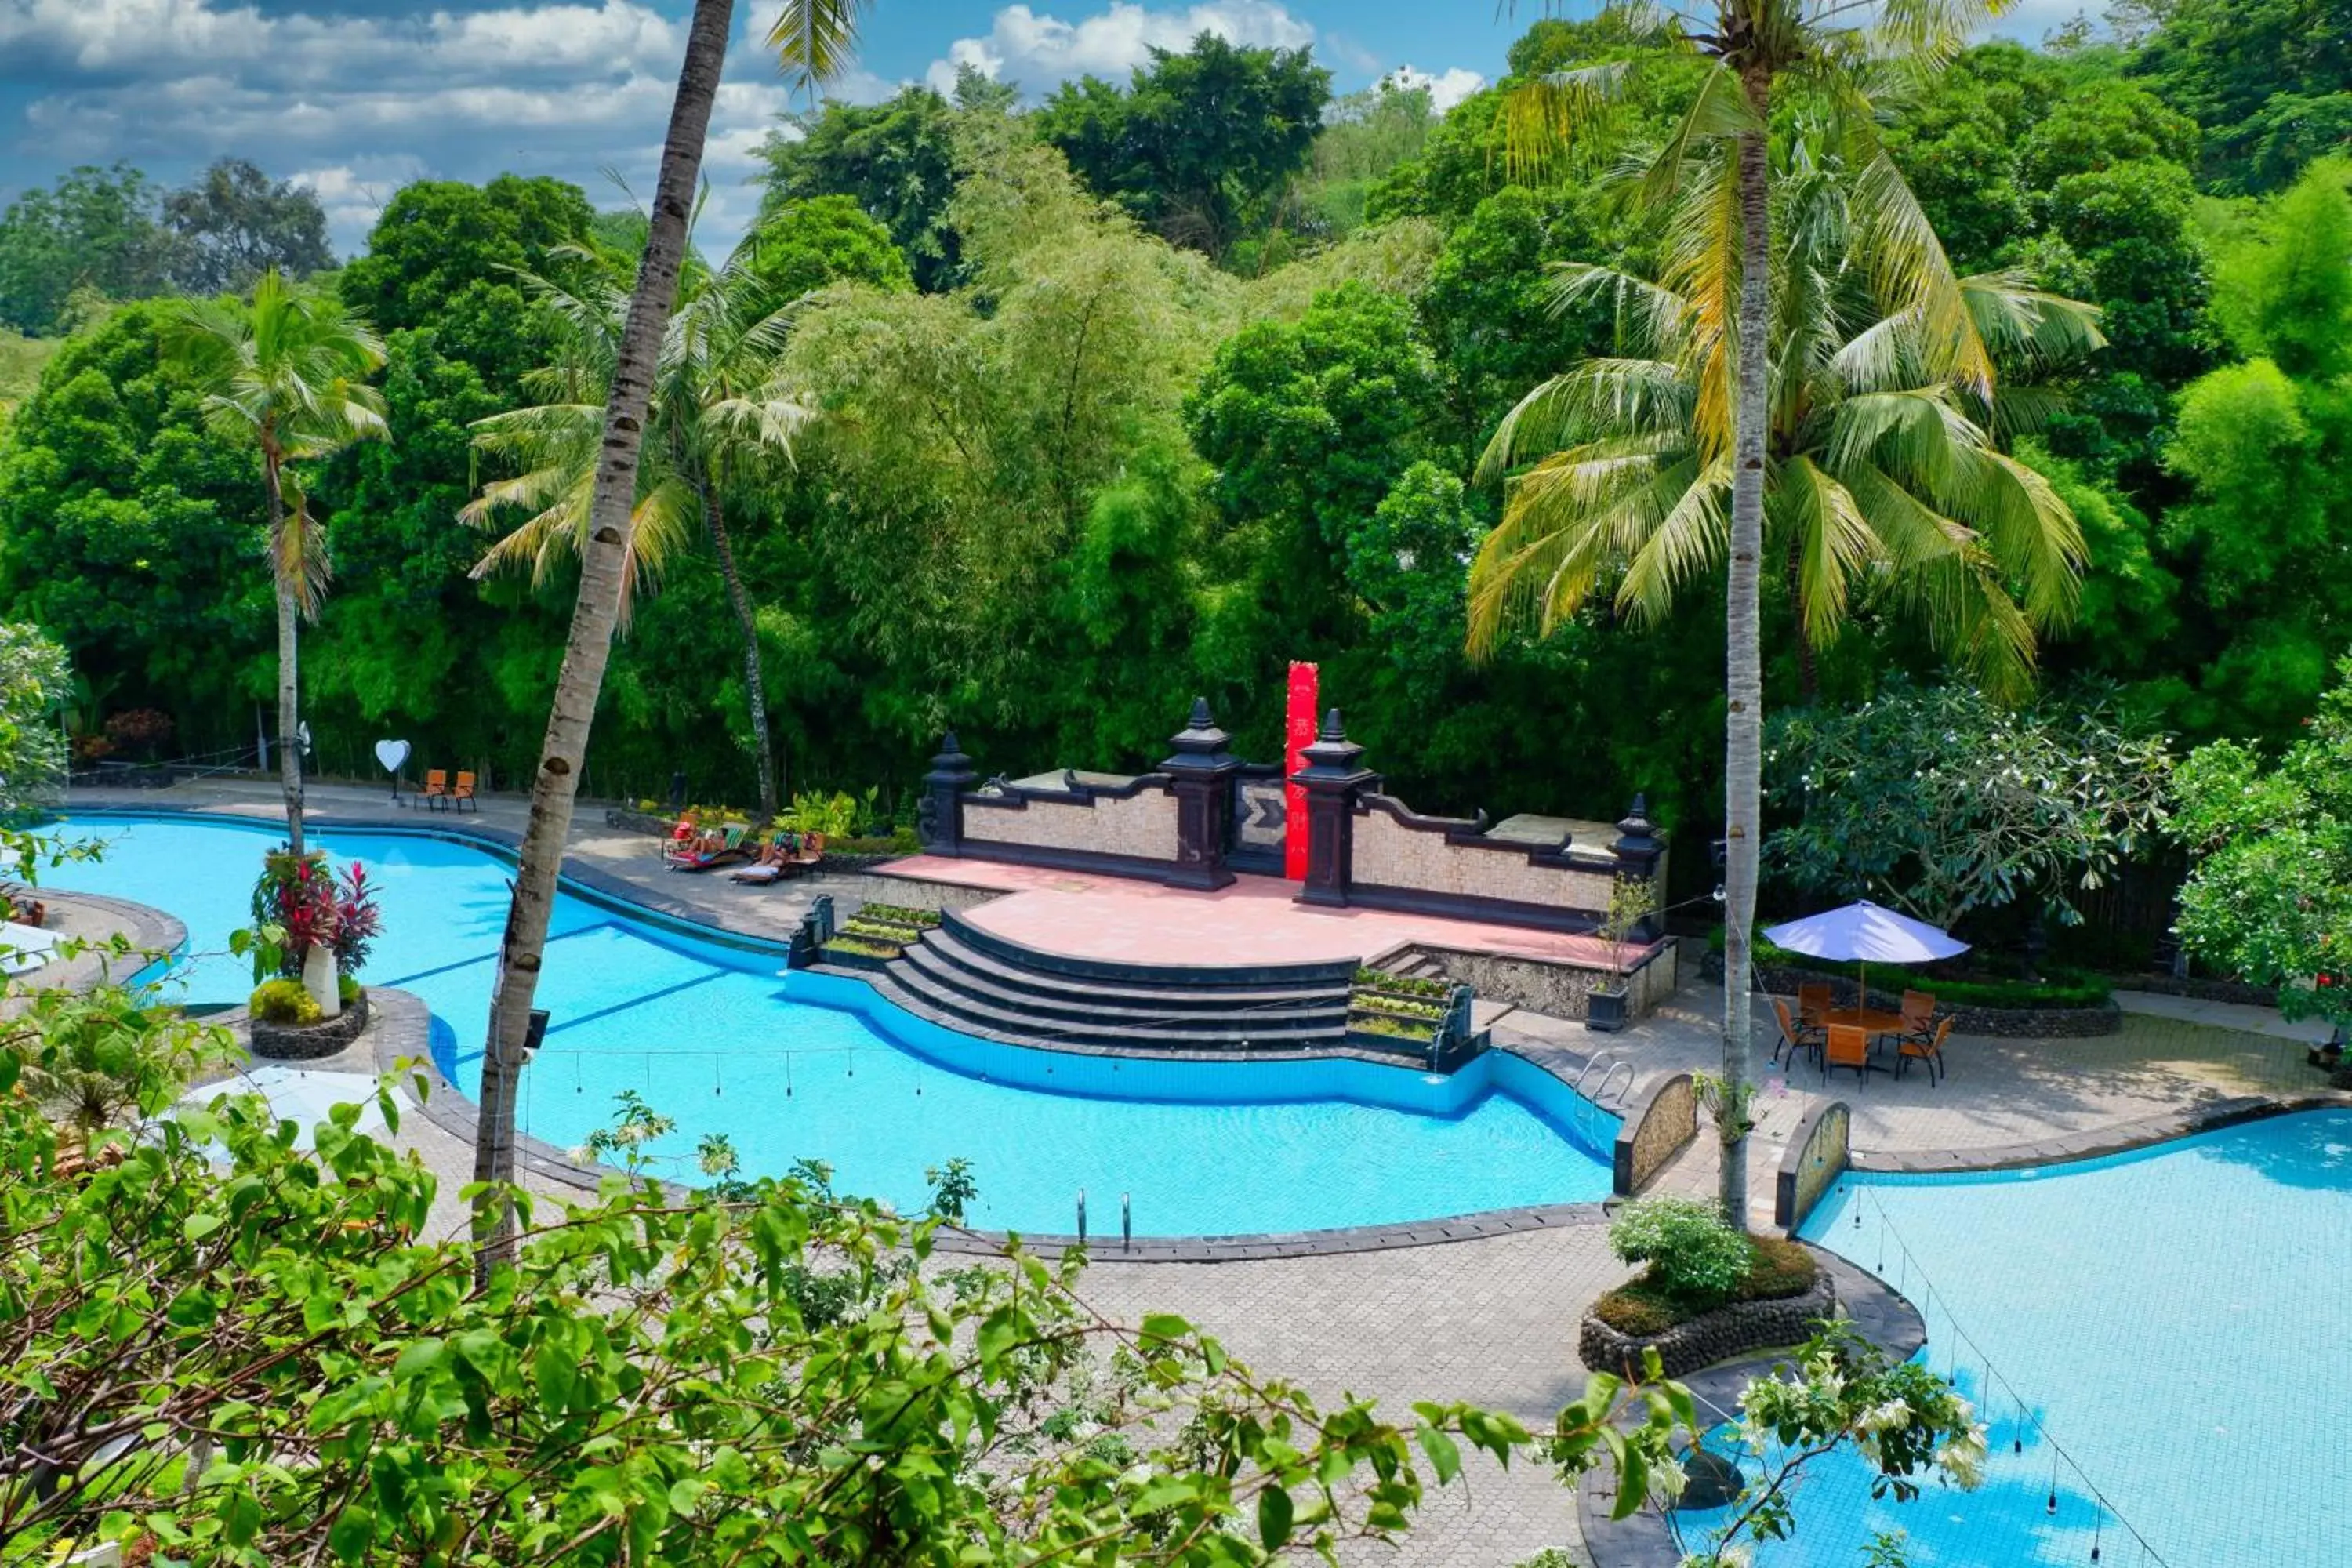 Pool view, Swimming Pool in The Jayakarta Yogyakarta Hotel & Spa